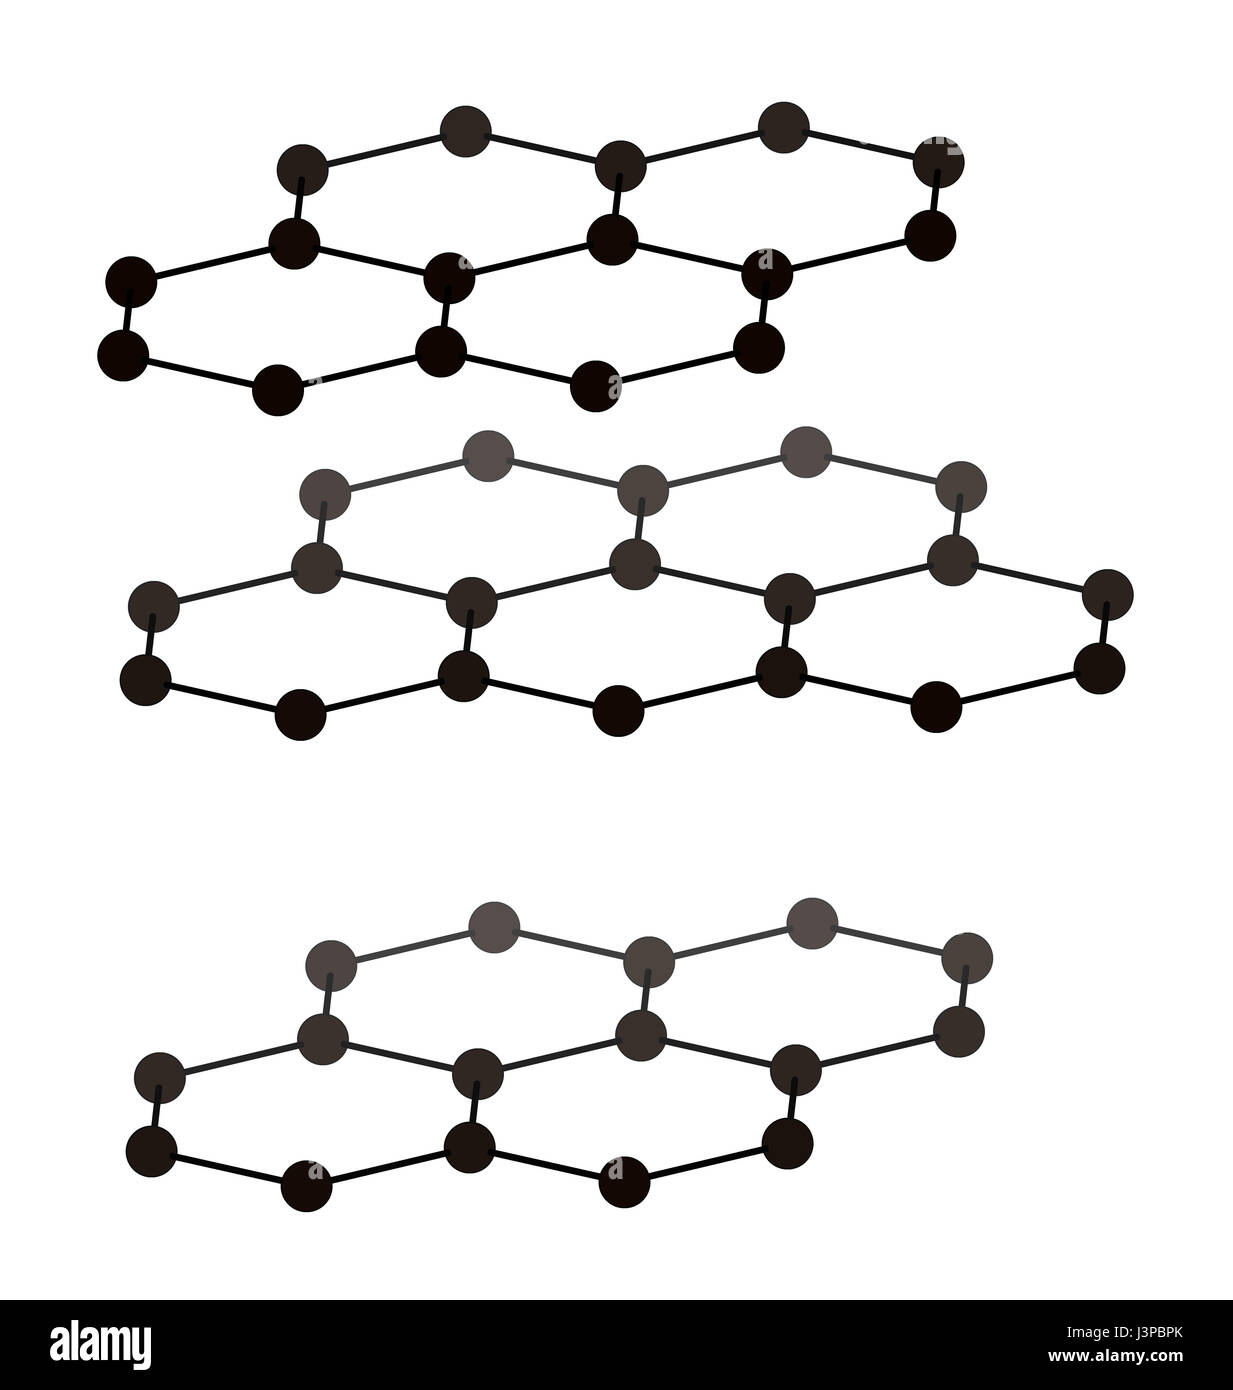 Graphit, Kristallstruktur. Auch bekannt als Bleistiftmine. Atome aus 3 Schichten werden angezeigt, um Layer zu stapeln zu veranschaulichen. Stockfoto